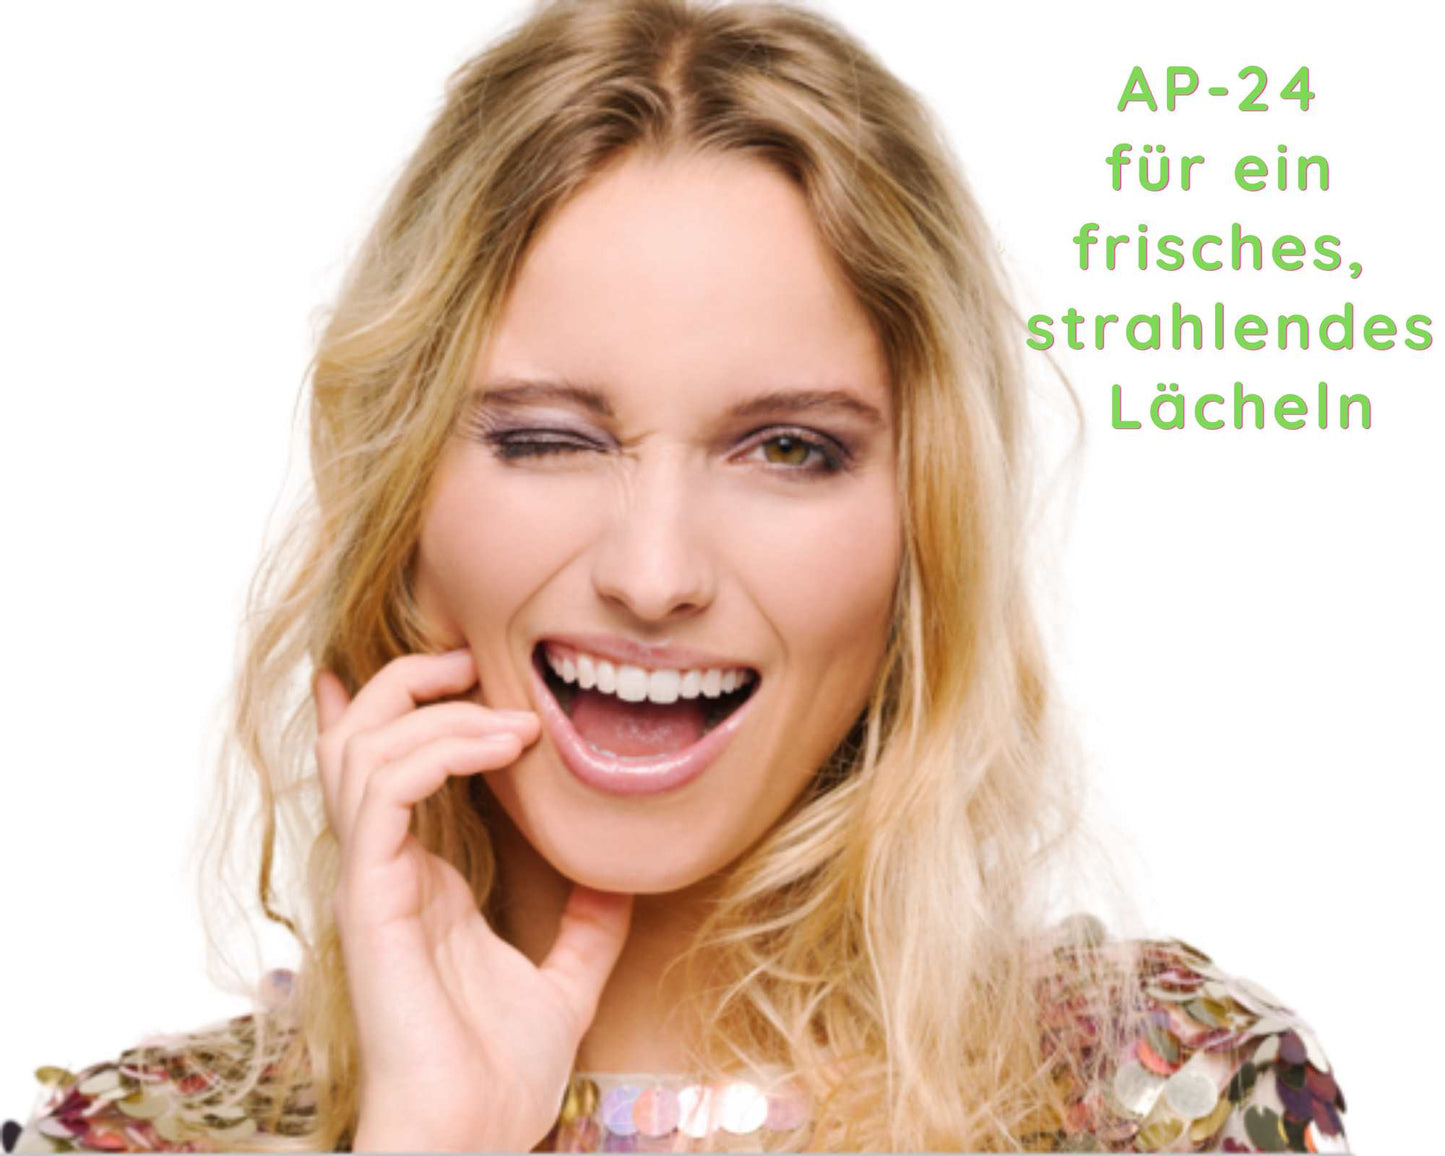 Femme aux belles dents blanches - Ap-24 pour un sourire frais et éclatant